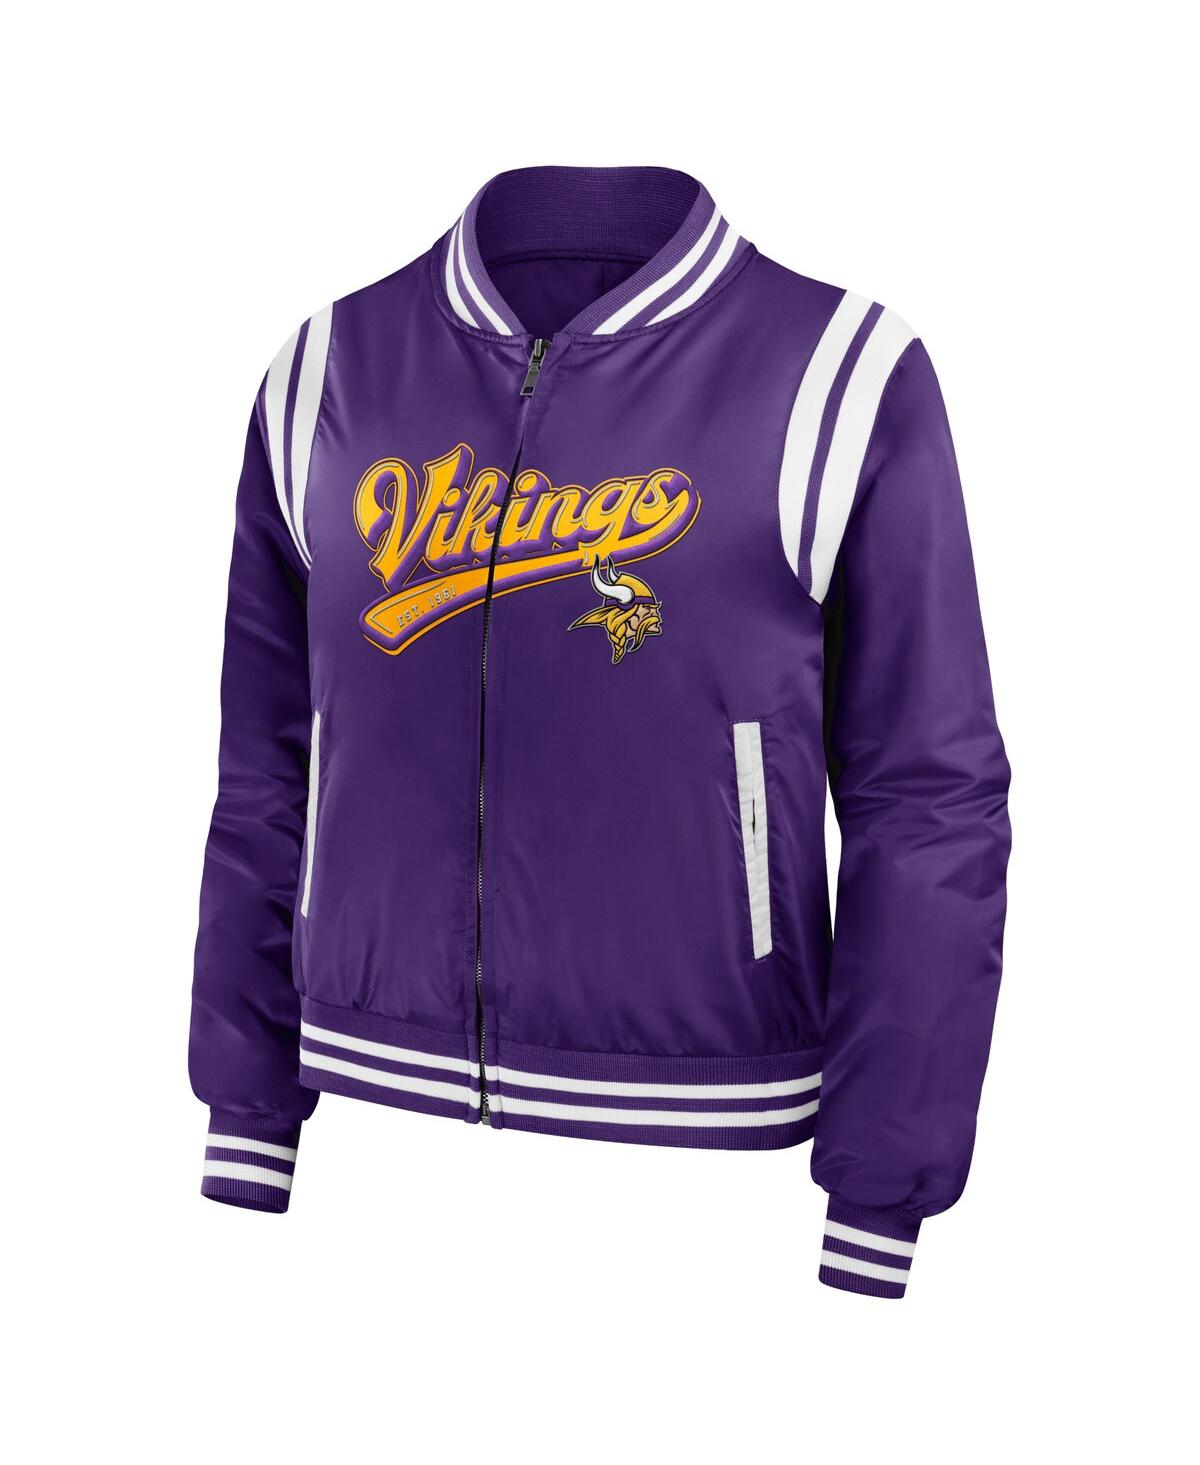 Shop Wear By Erin Andrews Women's  Purple Minnesota Vikings Bomber Full-zip Jacket